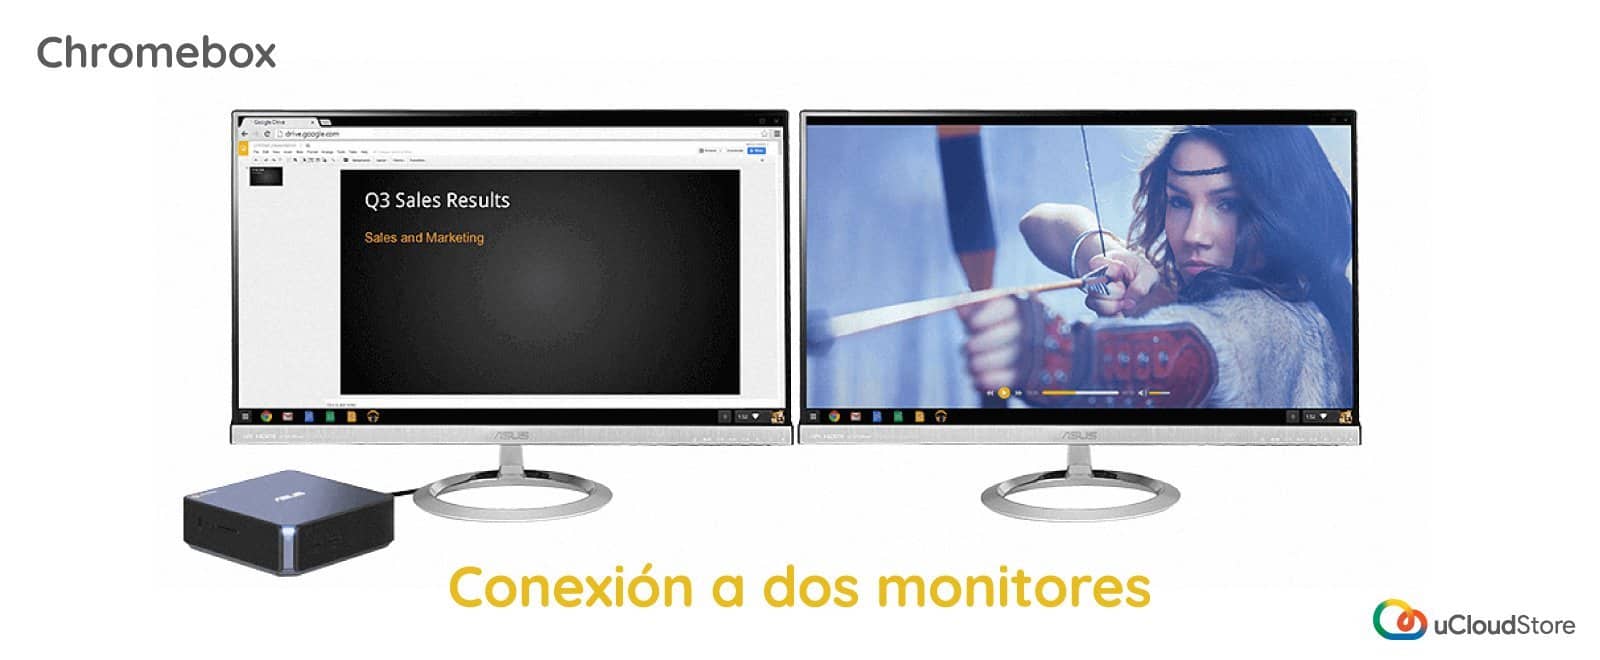 Imagen de Chromebox con conexión a dos monitores